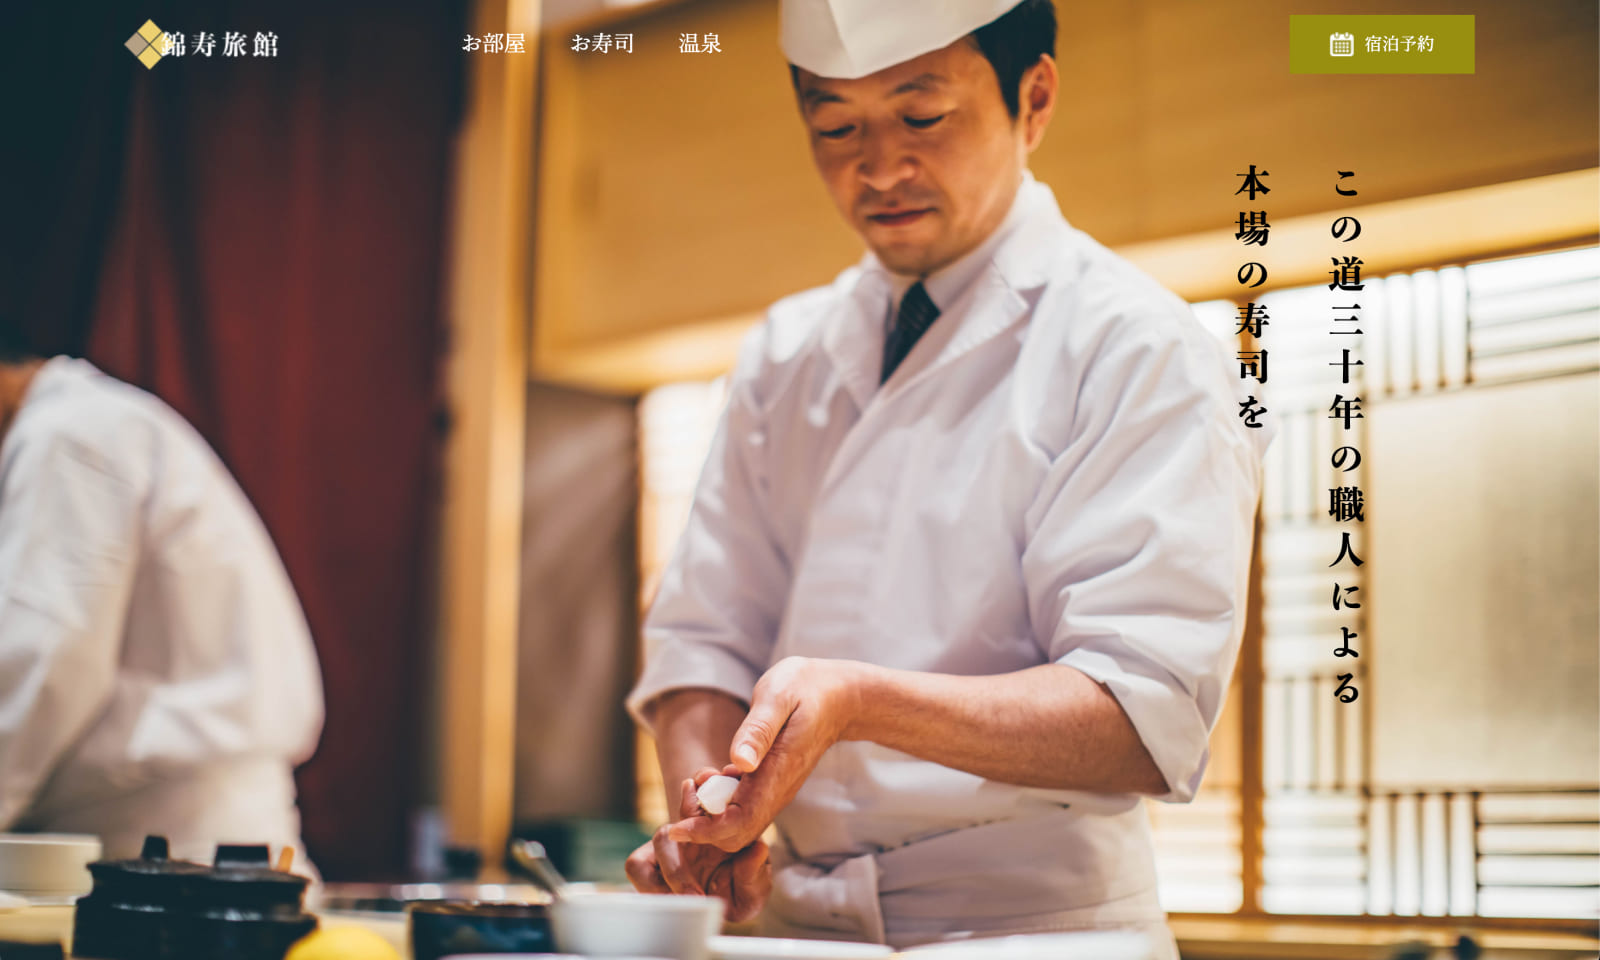 錦寿旅館という架空の旅館のサイトで温泉と寿司を組み合わせたところが特徴です。